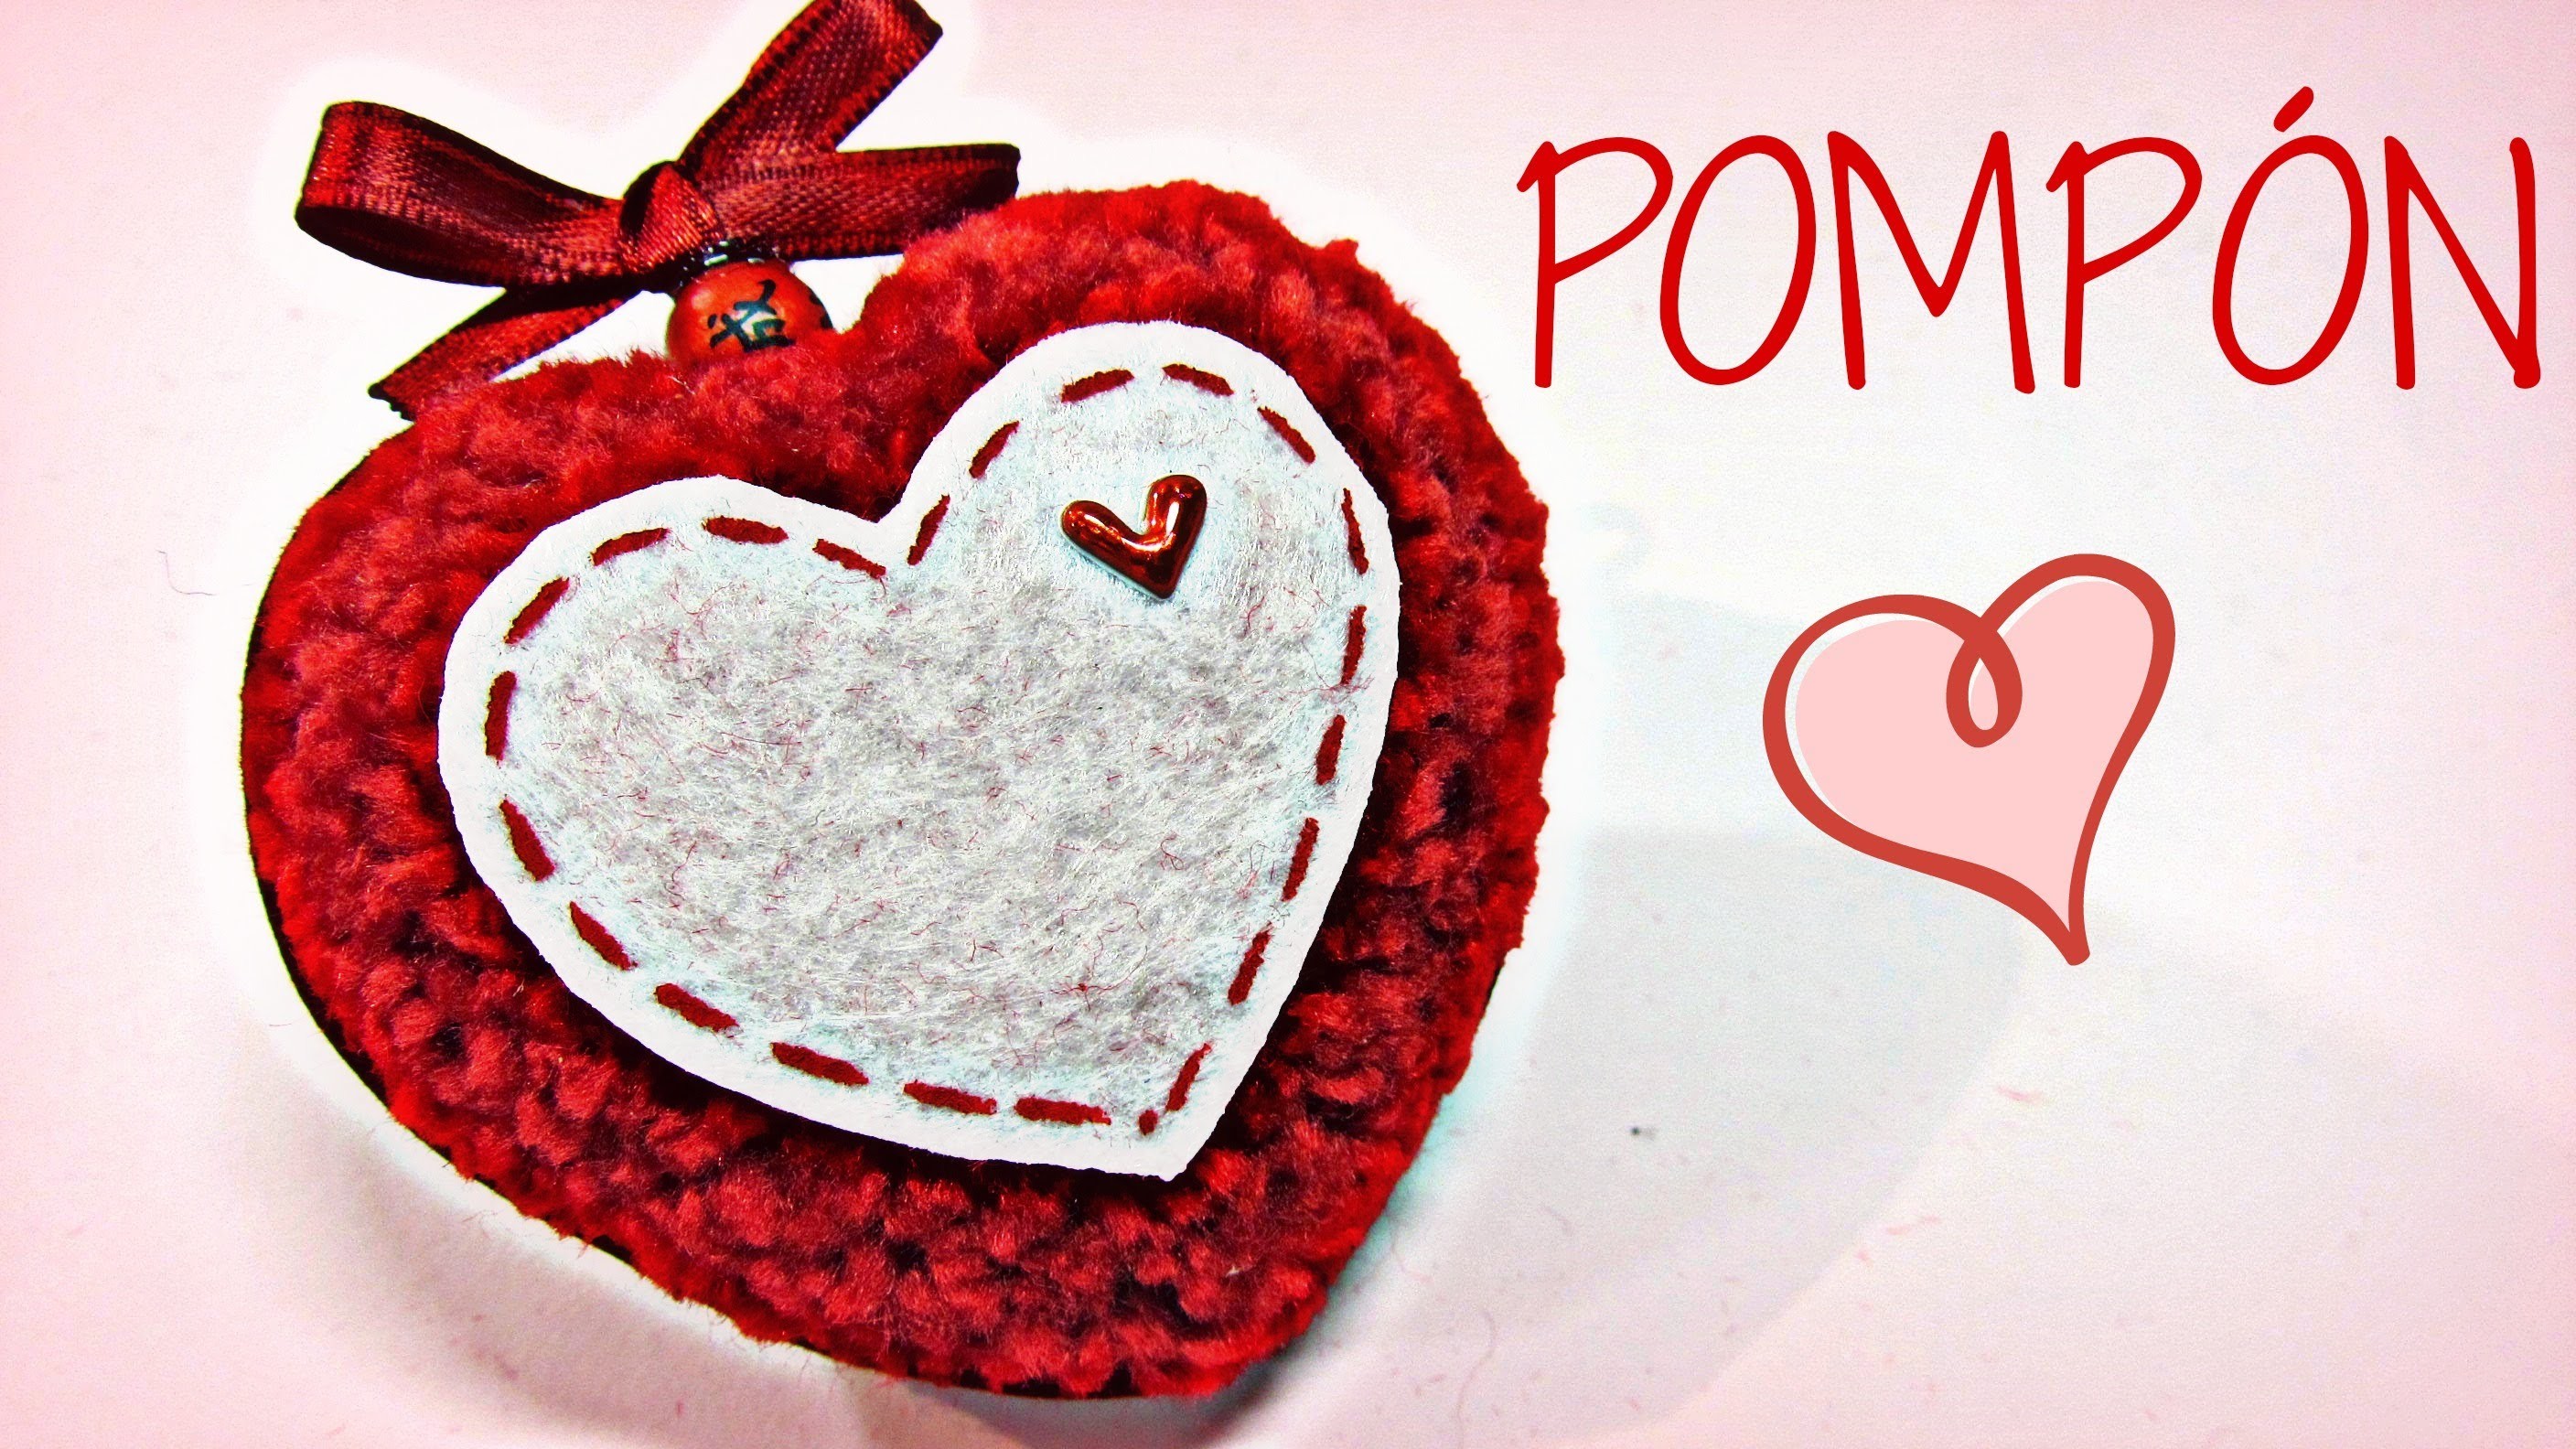 Pompón Corazón. Heart pompom. (San Valentín)